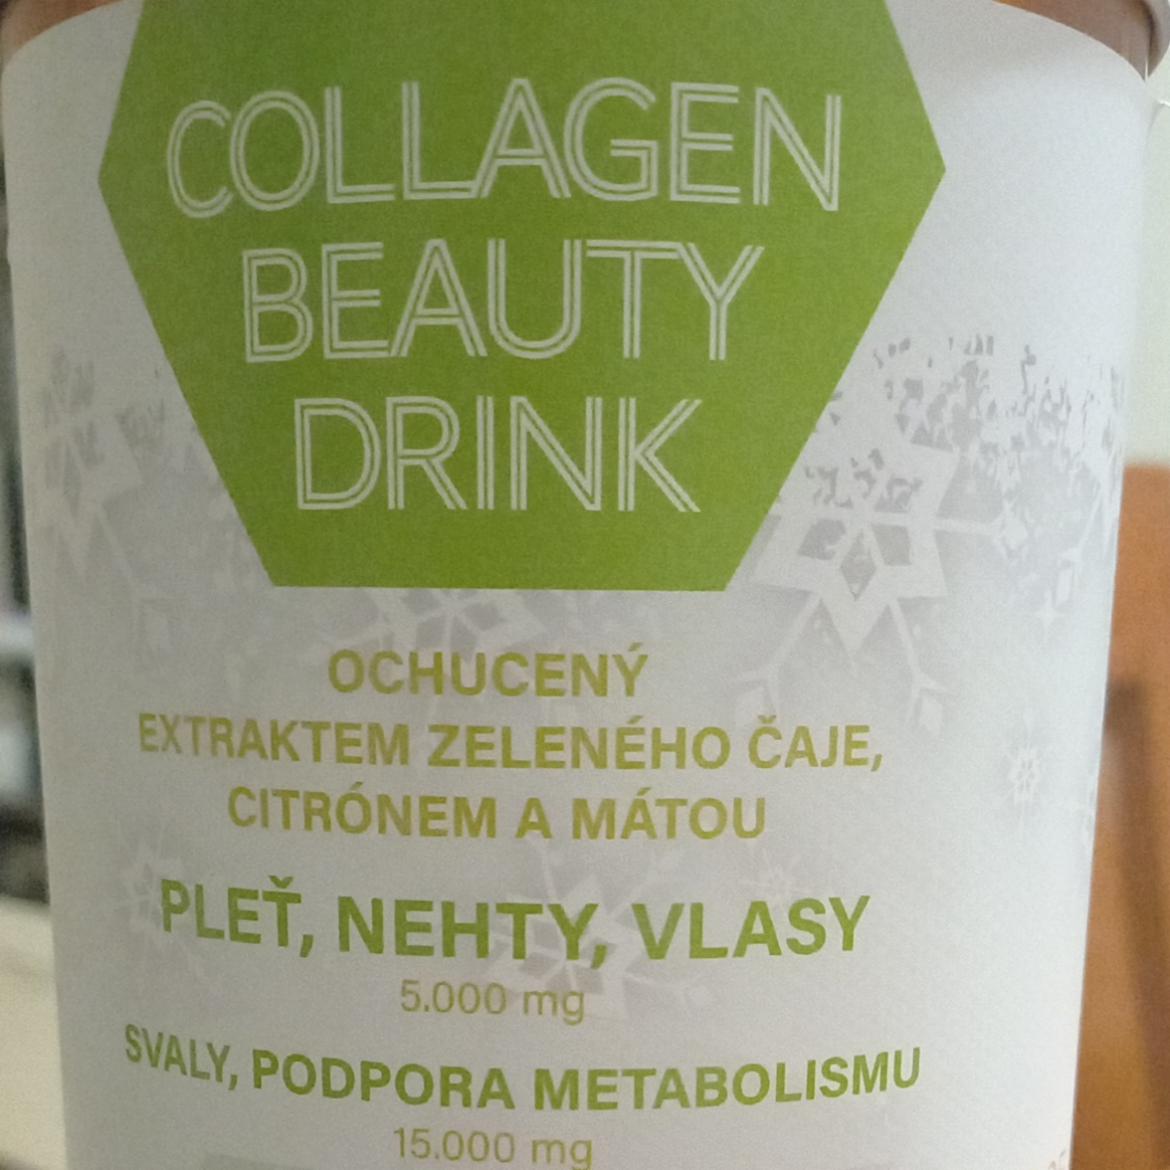 Fotografie - Collagen beauty drink ochucený extraktem zeleného čaje, citrónem a mátou